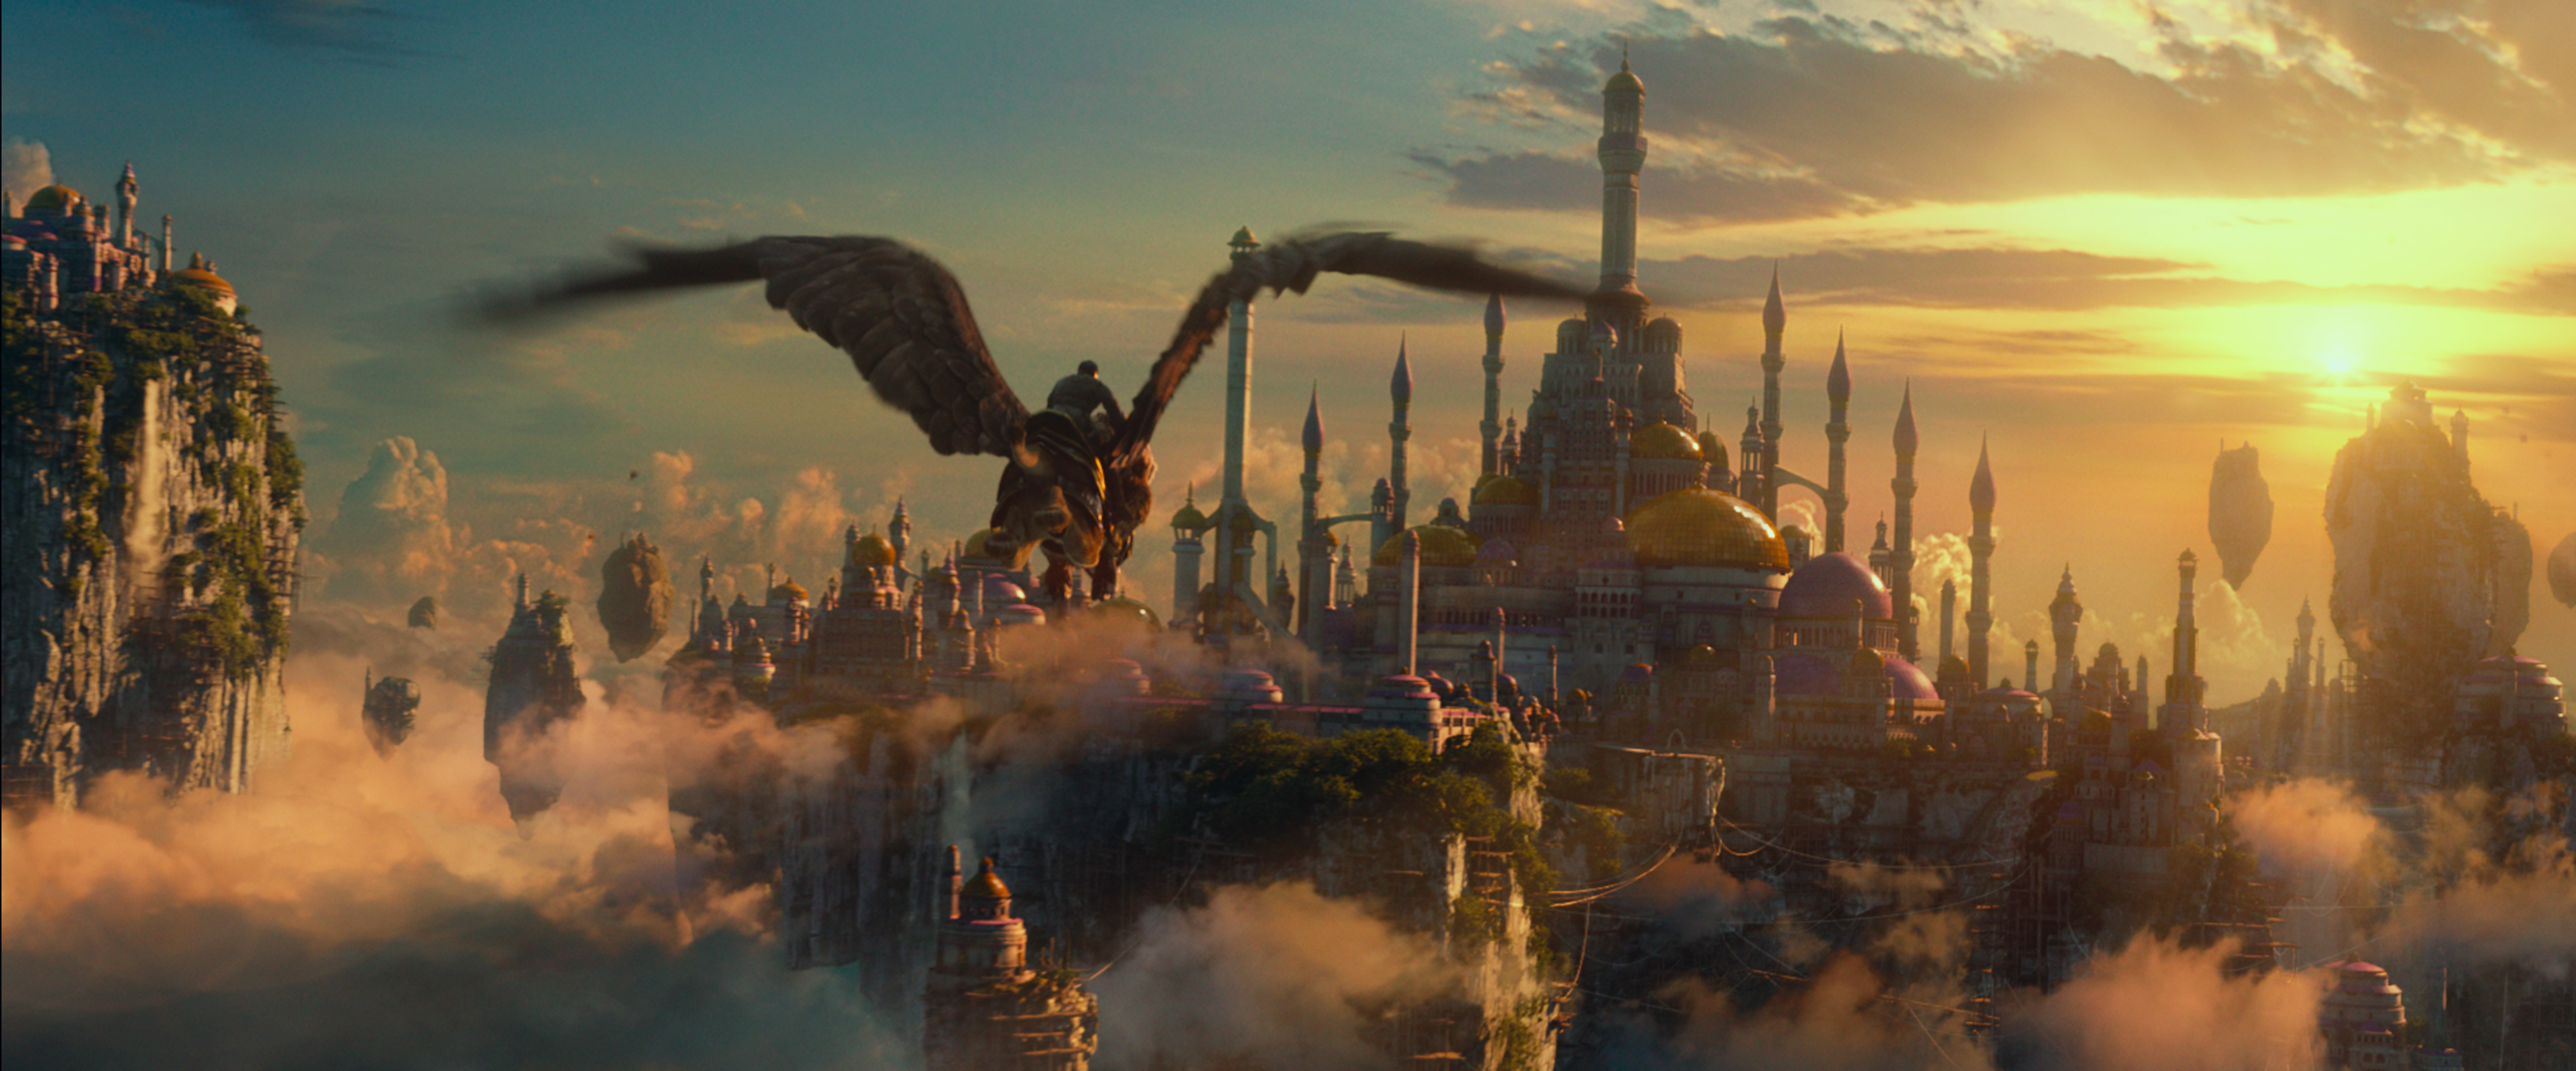 Warcraft Movie, Warcraft, Wow Movie, Movie, Griffin, Alliance, Fly